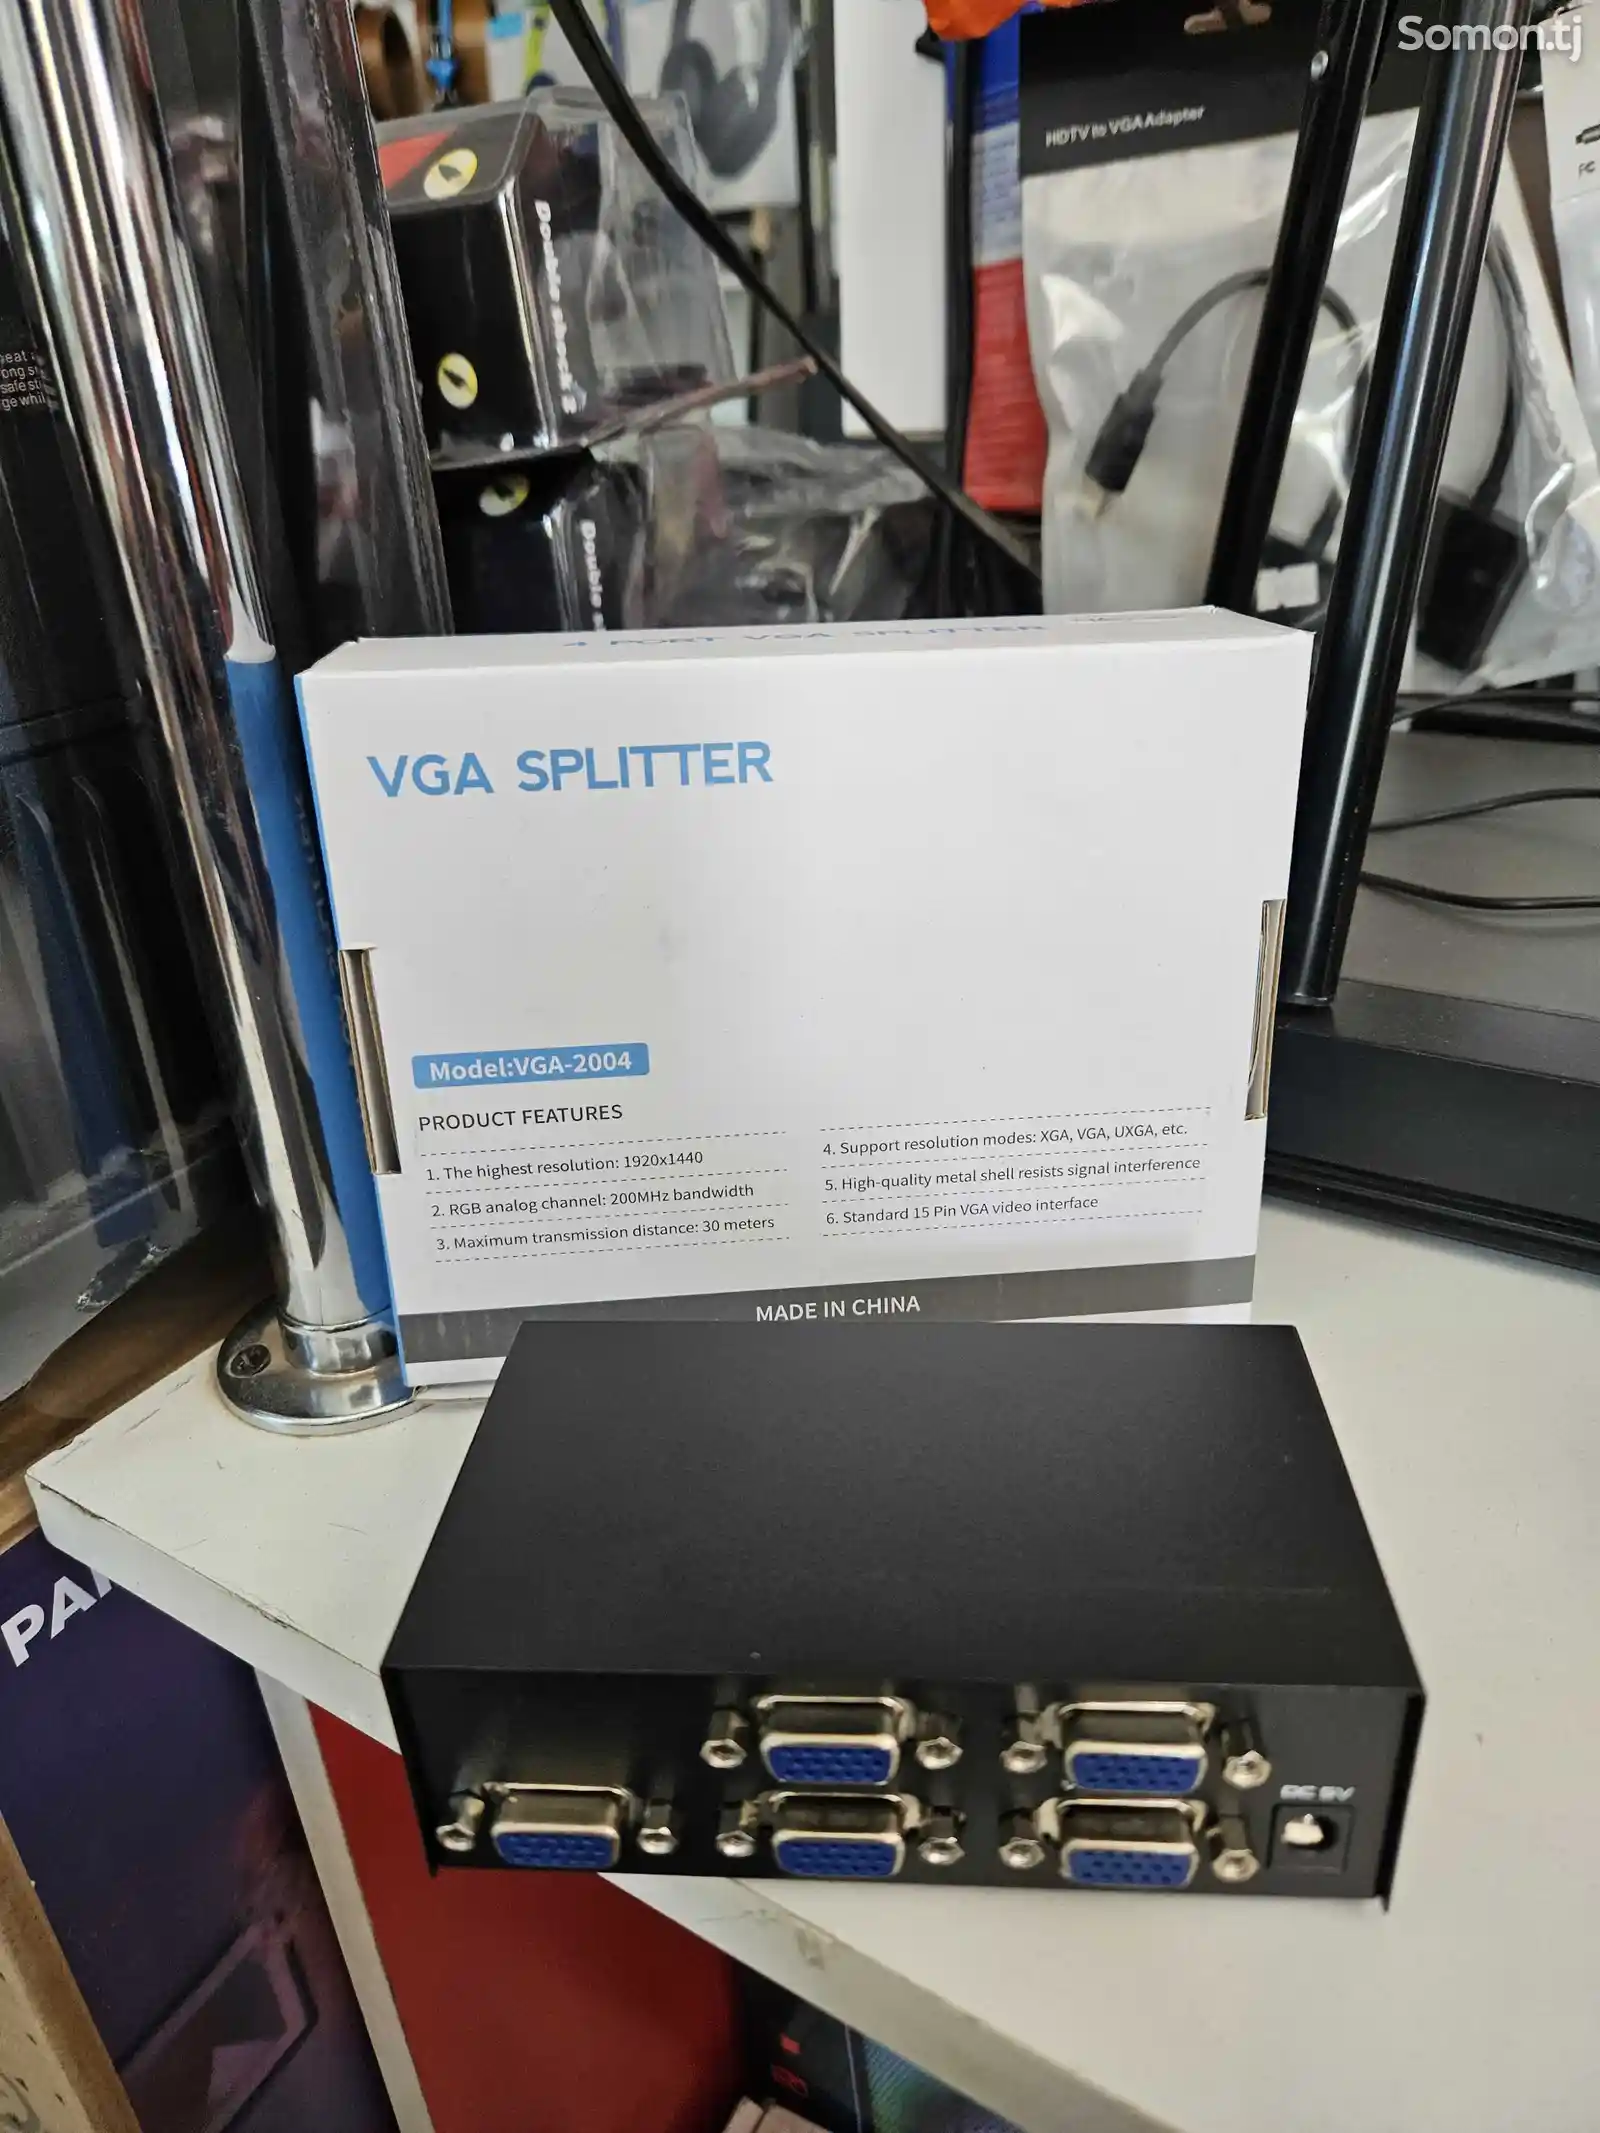 VGA splinter 2004 4port-4